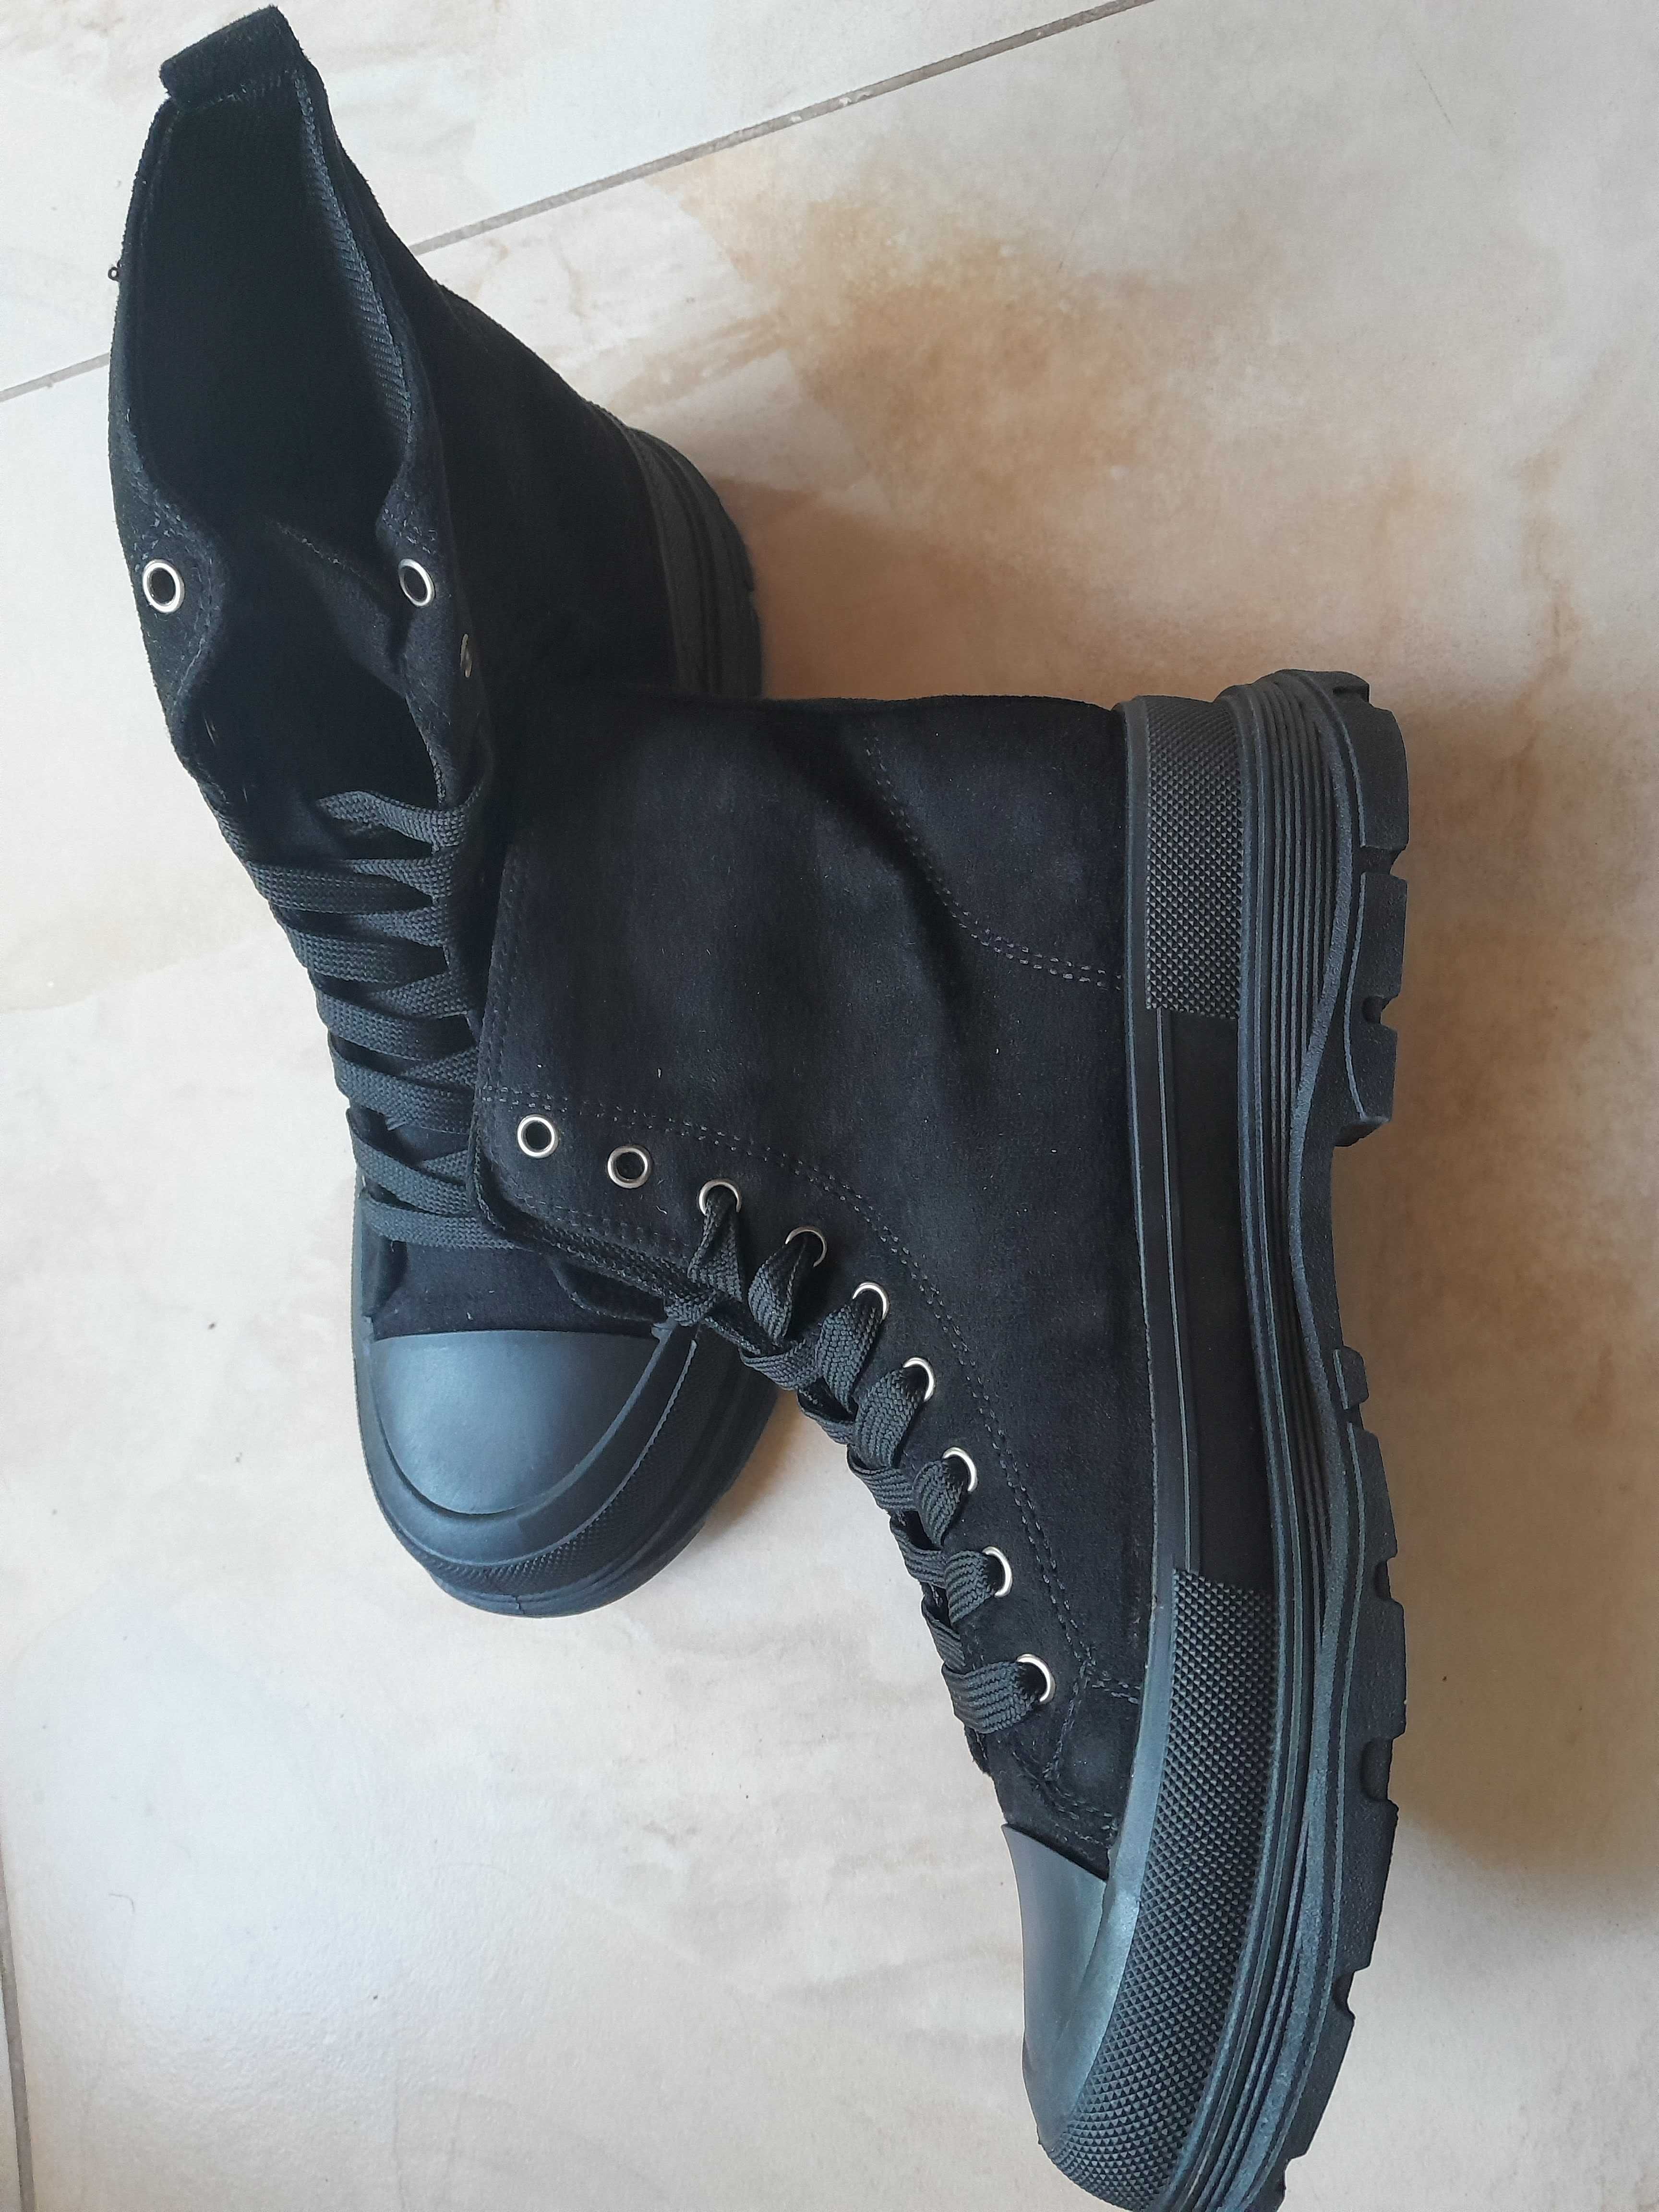 buty damskie typu traperki/trampki sznurowane czarne 39